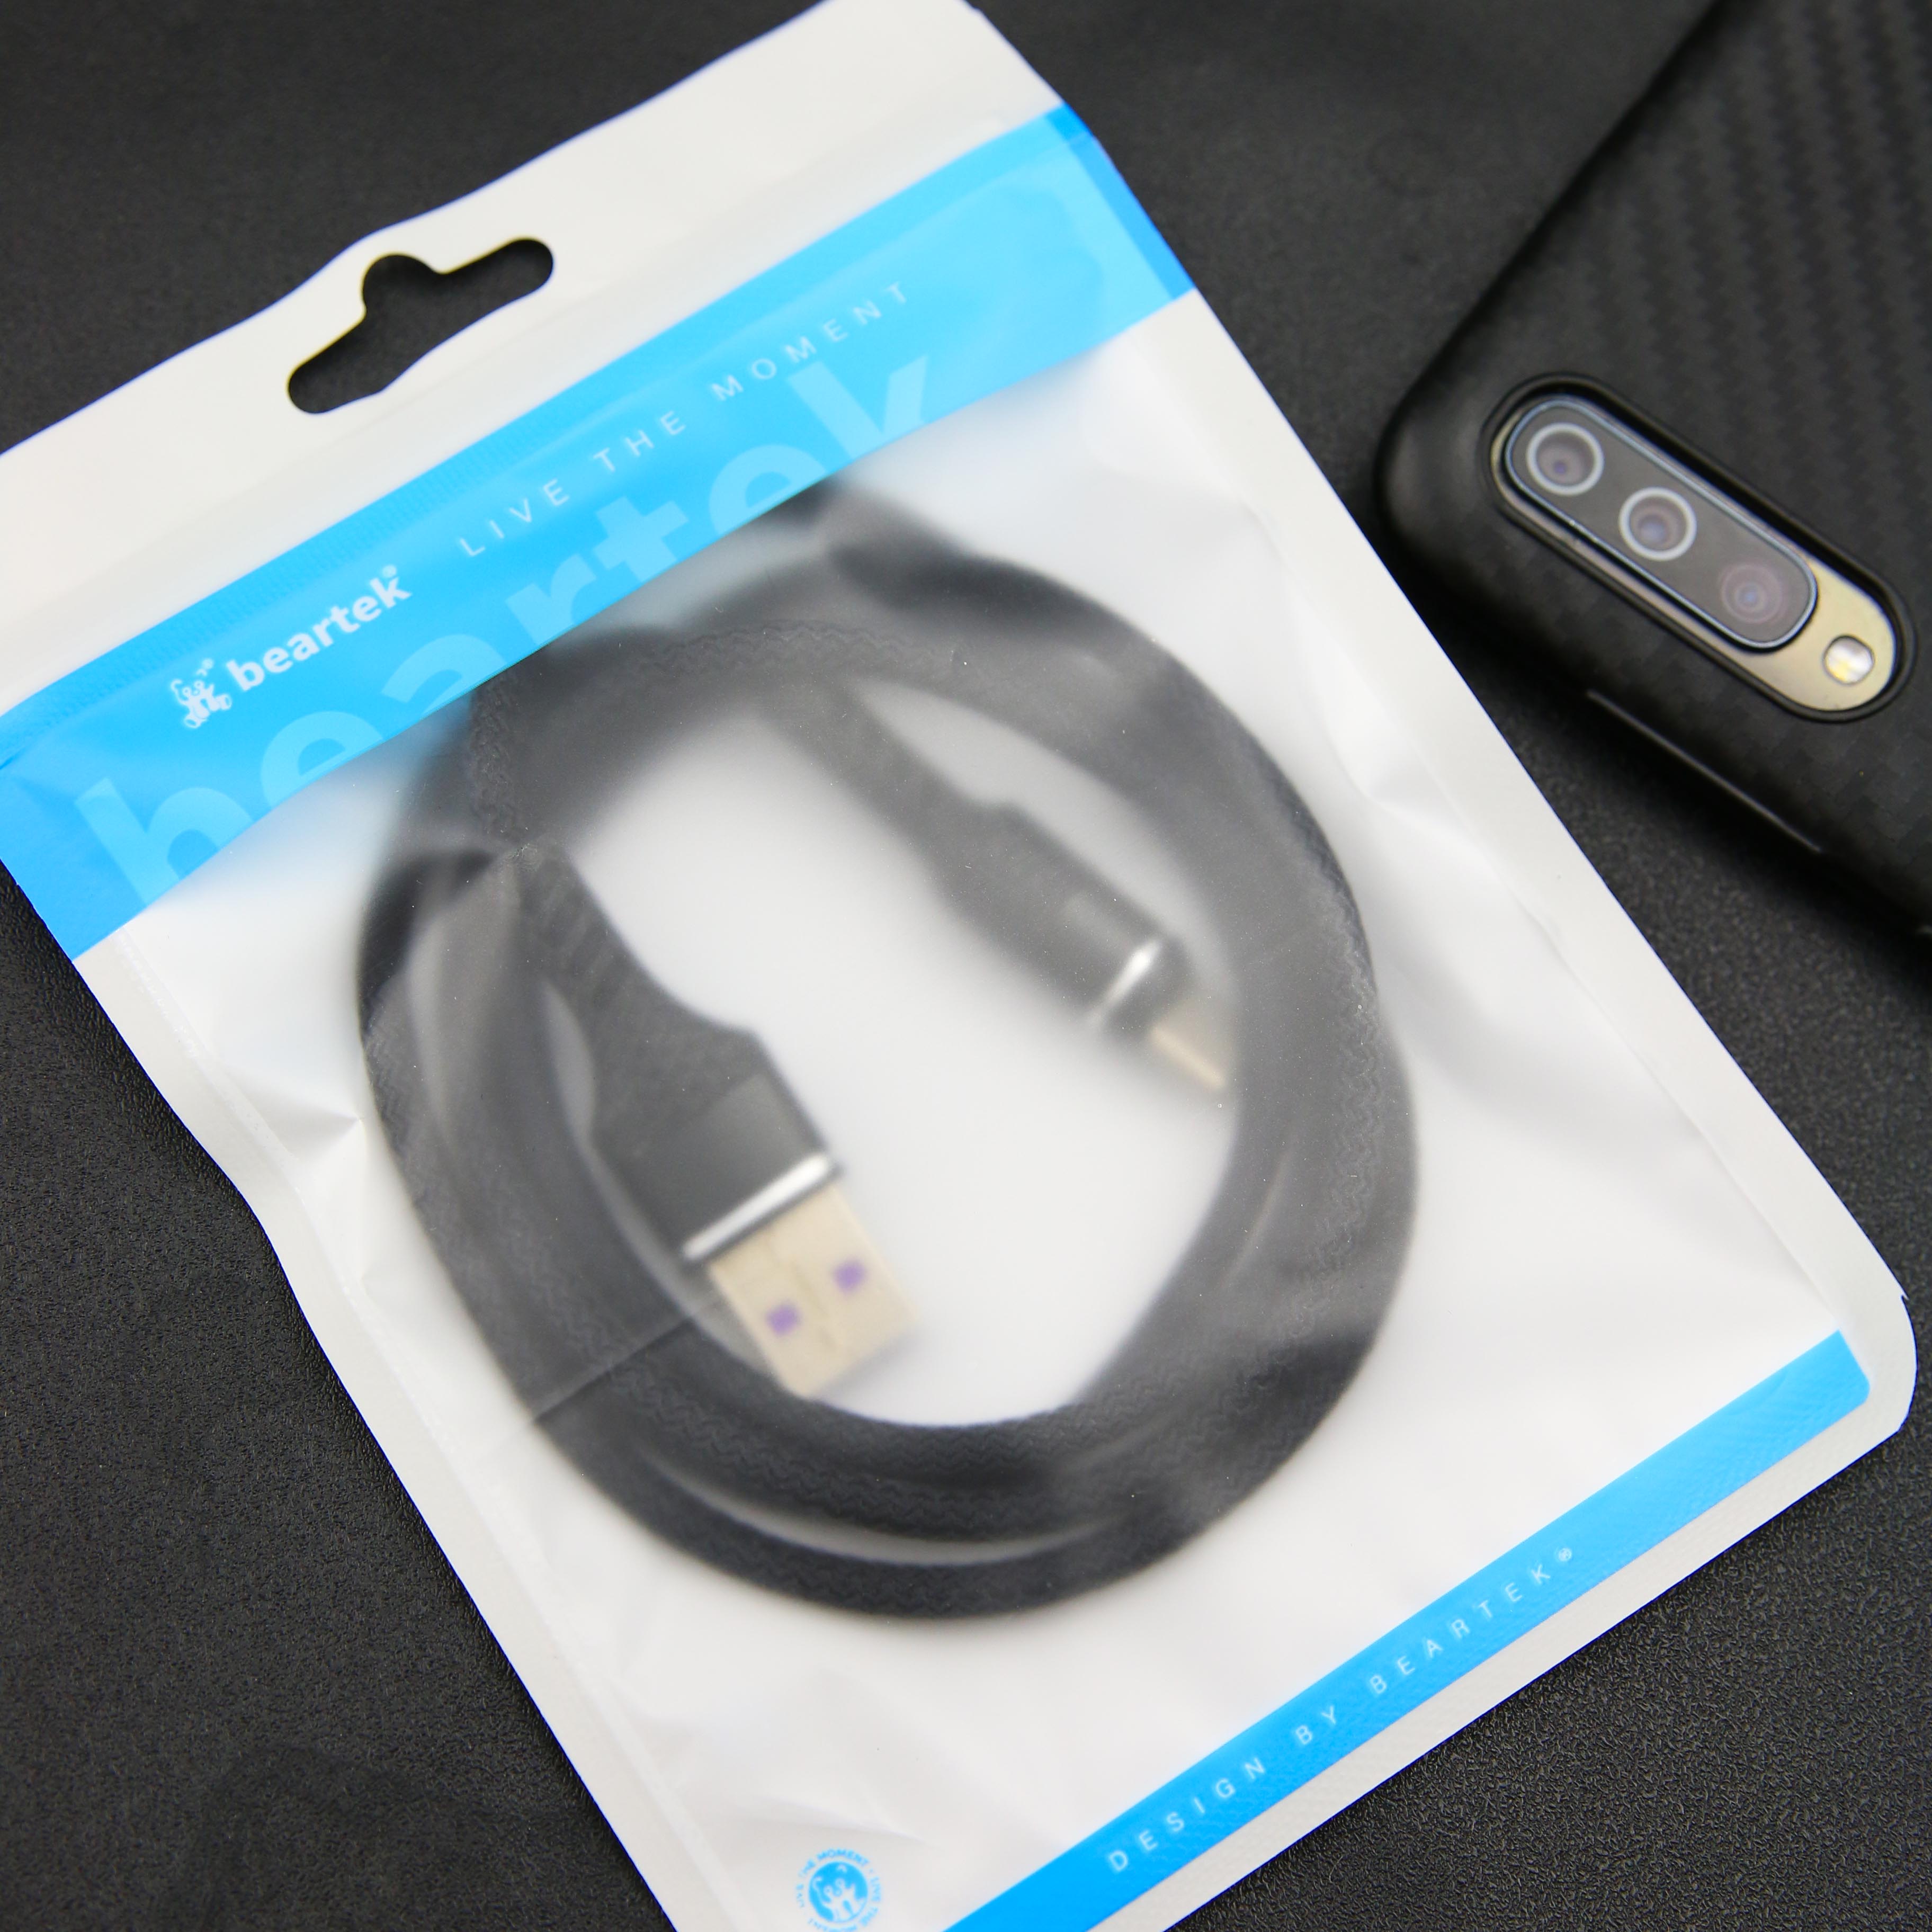 Cáp sạc 3 đầu Beartek siêu bền, nhiều cổng sạc: USB micro, type C, lightning cho điện thoại - Hàng chính hãng